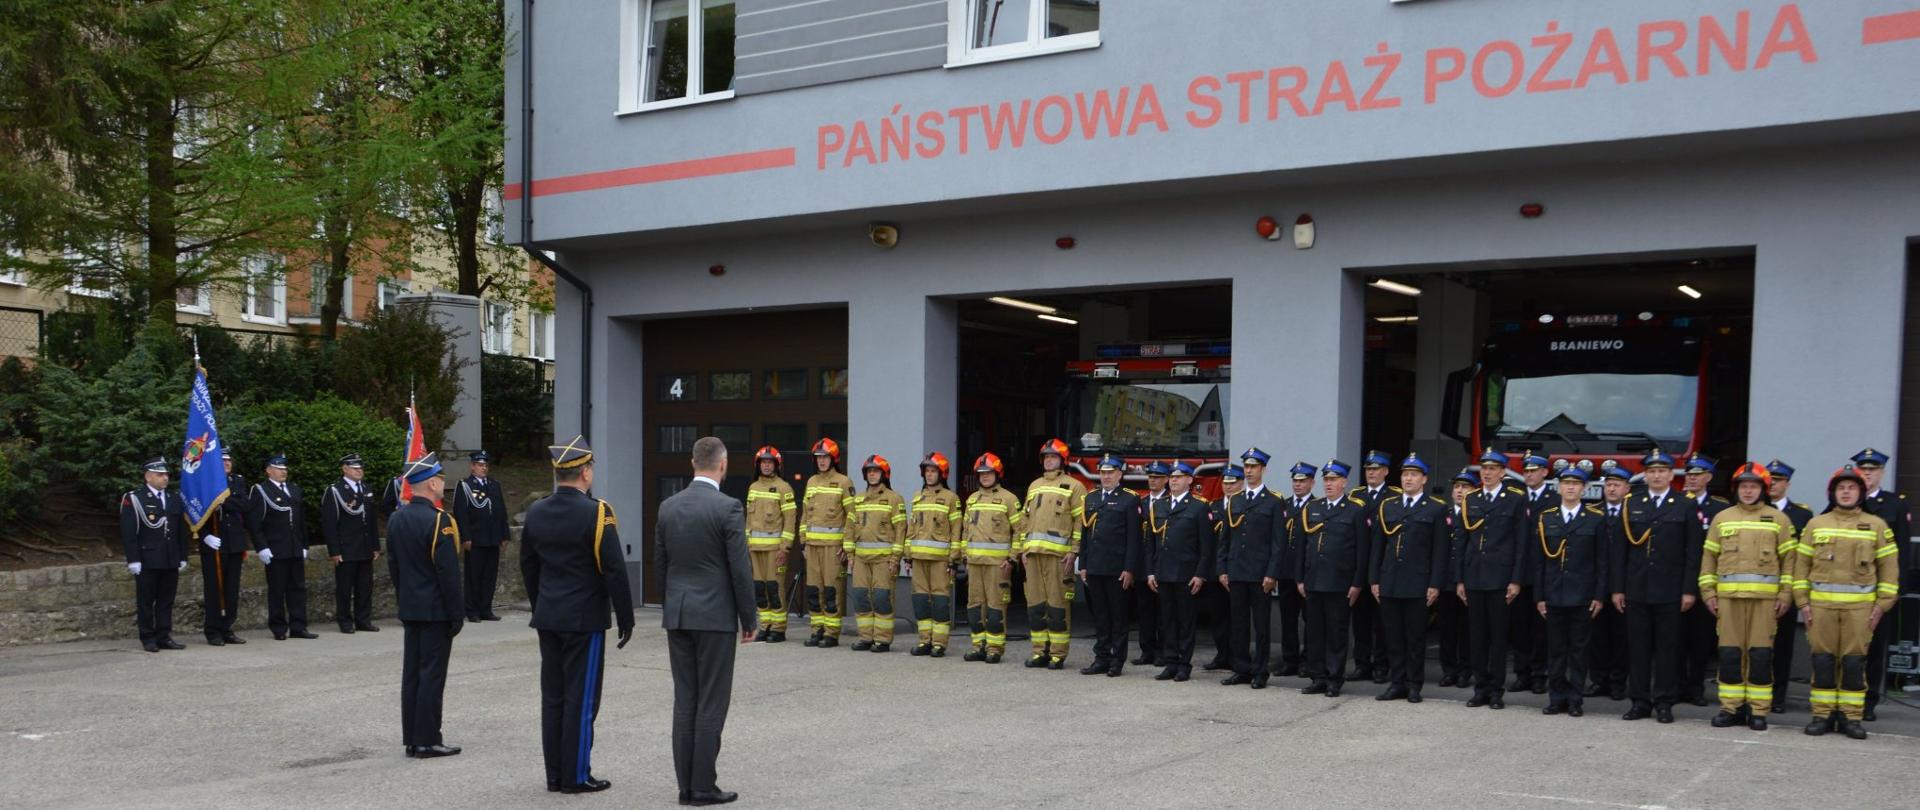 Plac wewnętrzny. Wzdłuż budynku strażnicy strażacy ustawieni w szeregu w mundurach galowych i bojowych, za nimi w bramach garażowych samochody strażackie. Z lewej strony sztandary.